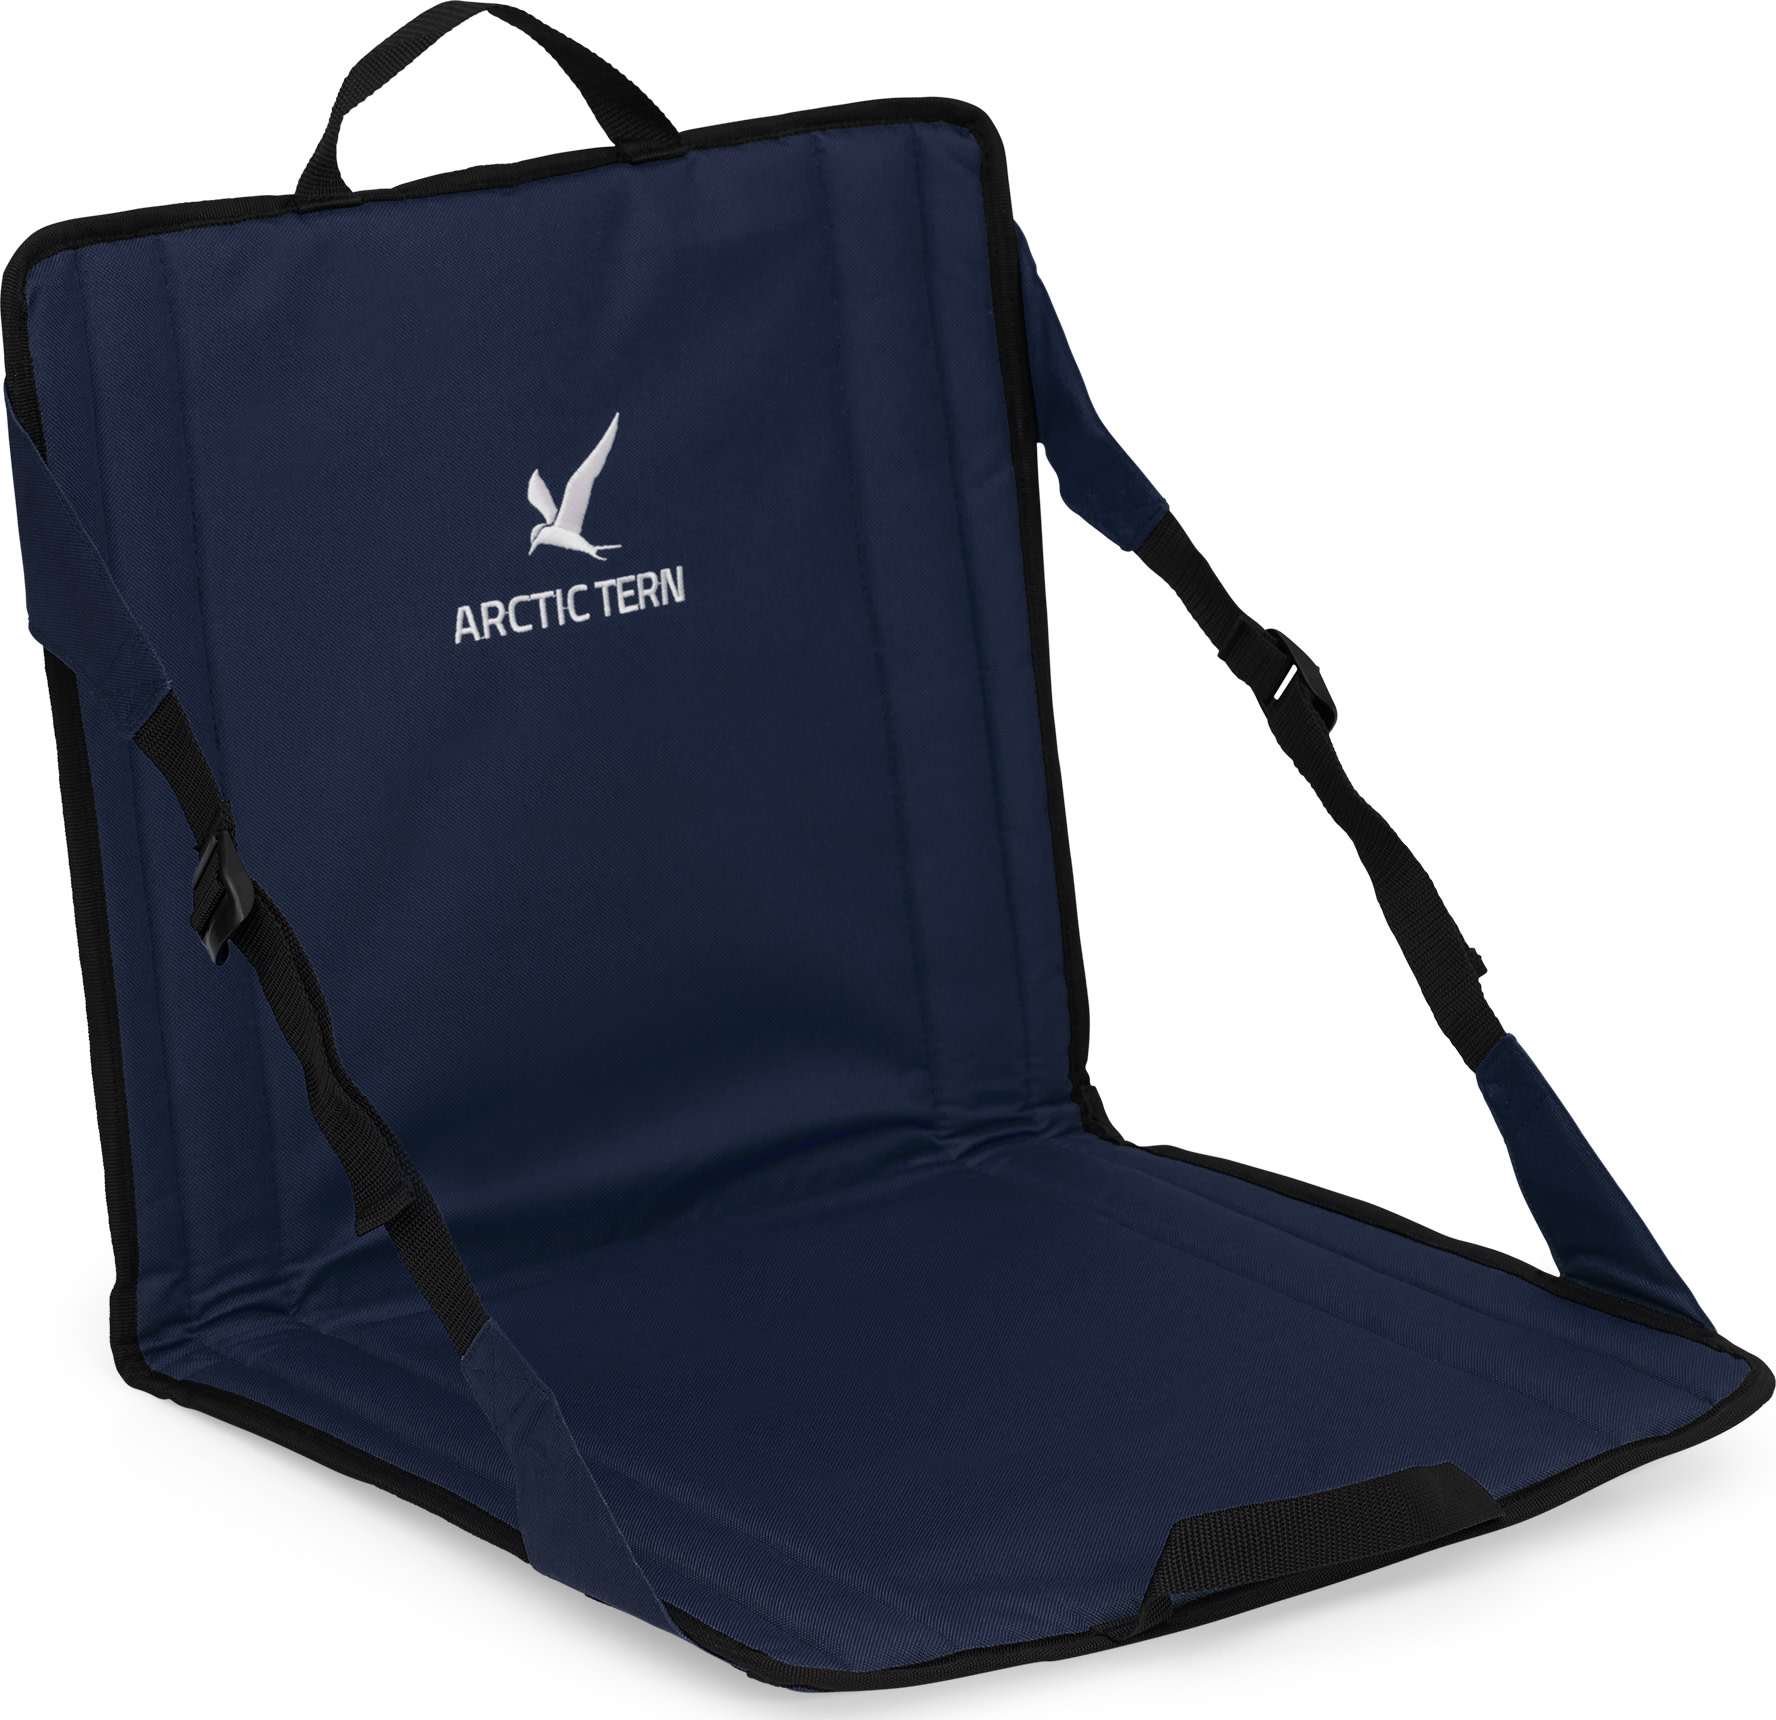 Arctic Tern Easy Beach Chair Ensign blue